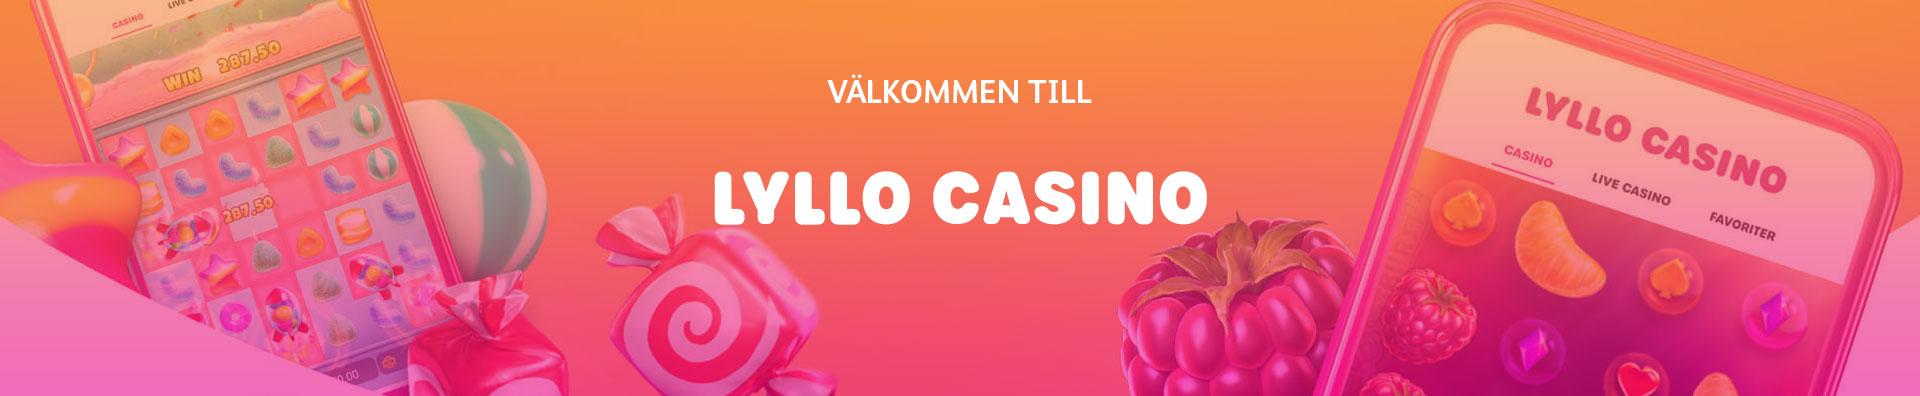 Lyllo Casino Recension